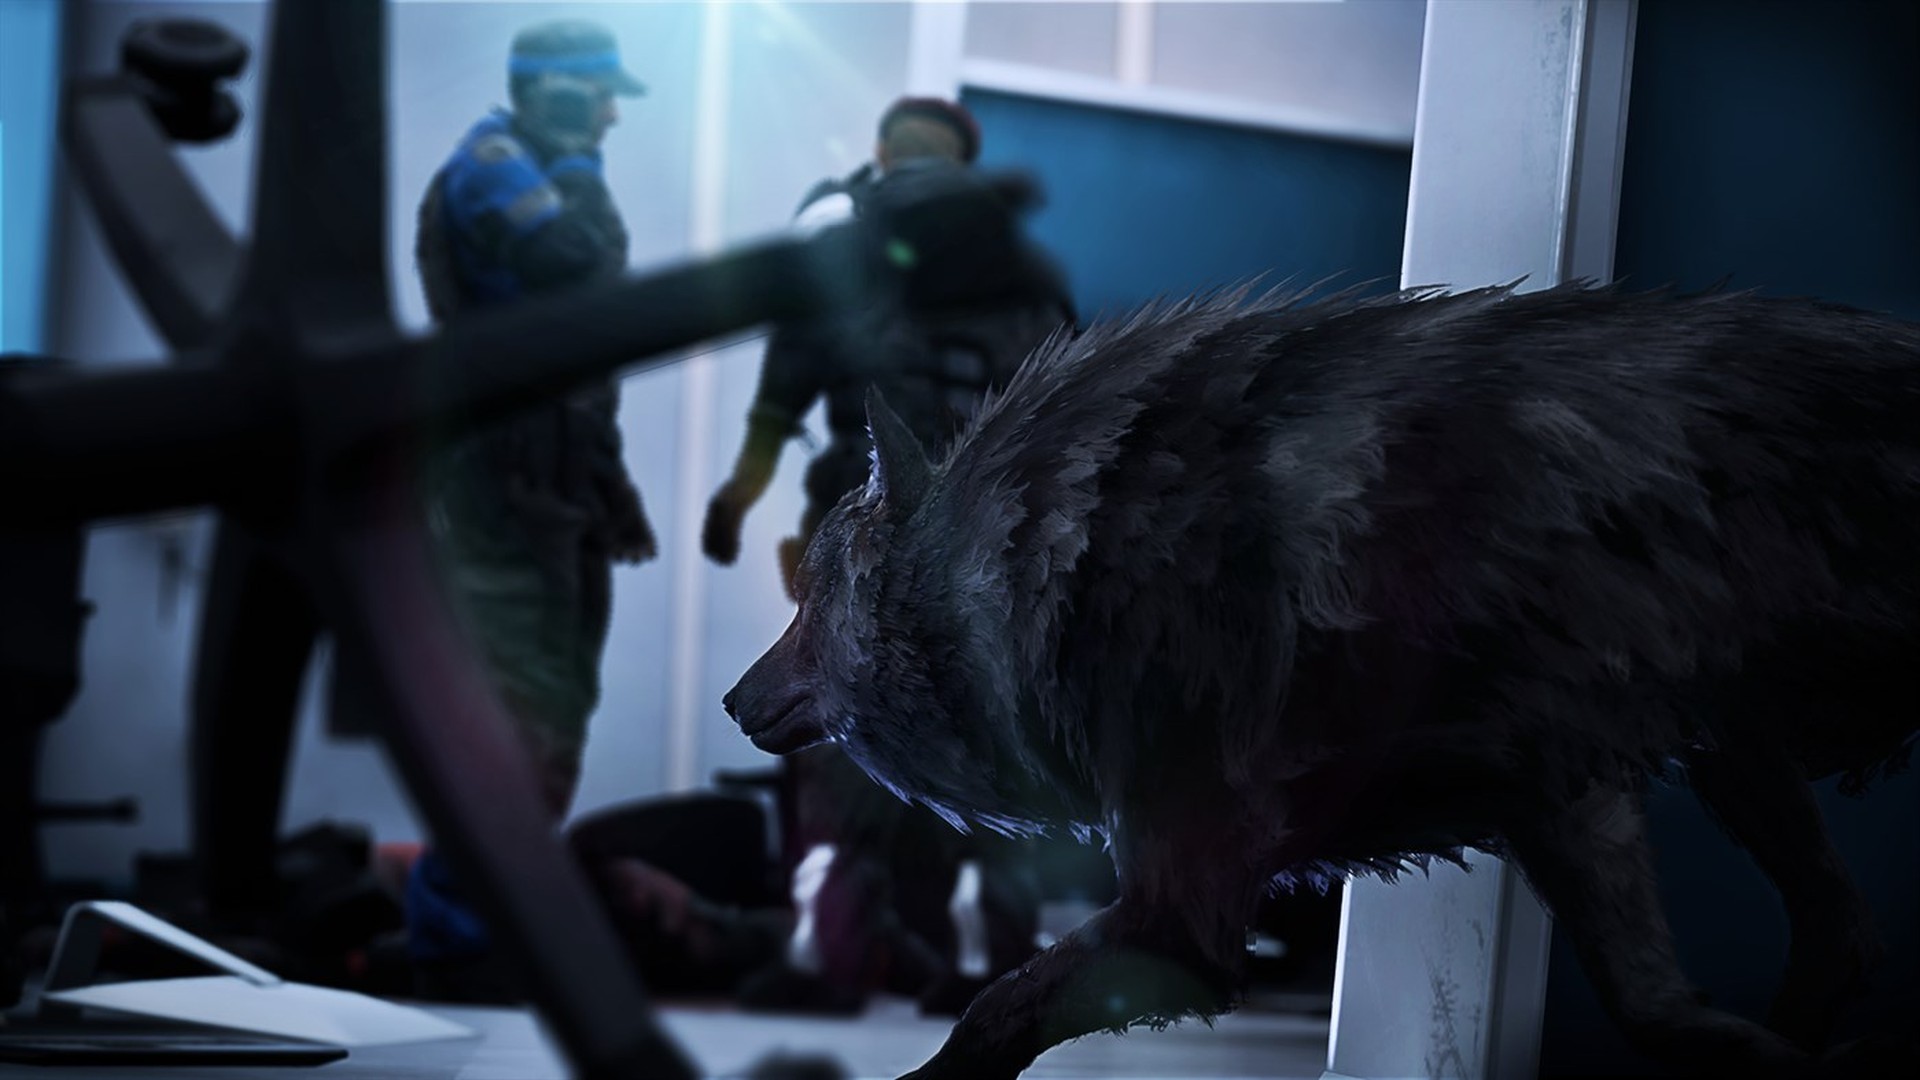 Werewolf: Bereitstellung von filmischen Grafiken mit RTX ON in unterstützten Spielen wie z - Februar 4 – Optimiert für Xbox Series X|S